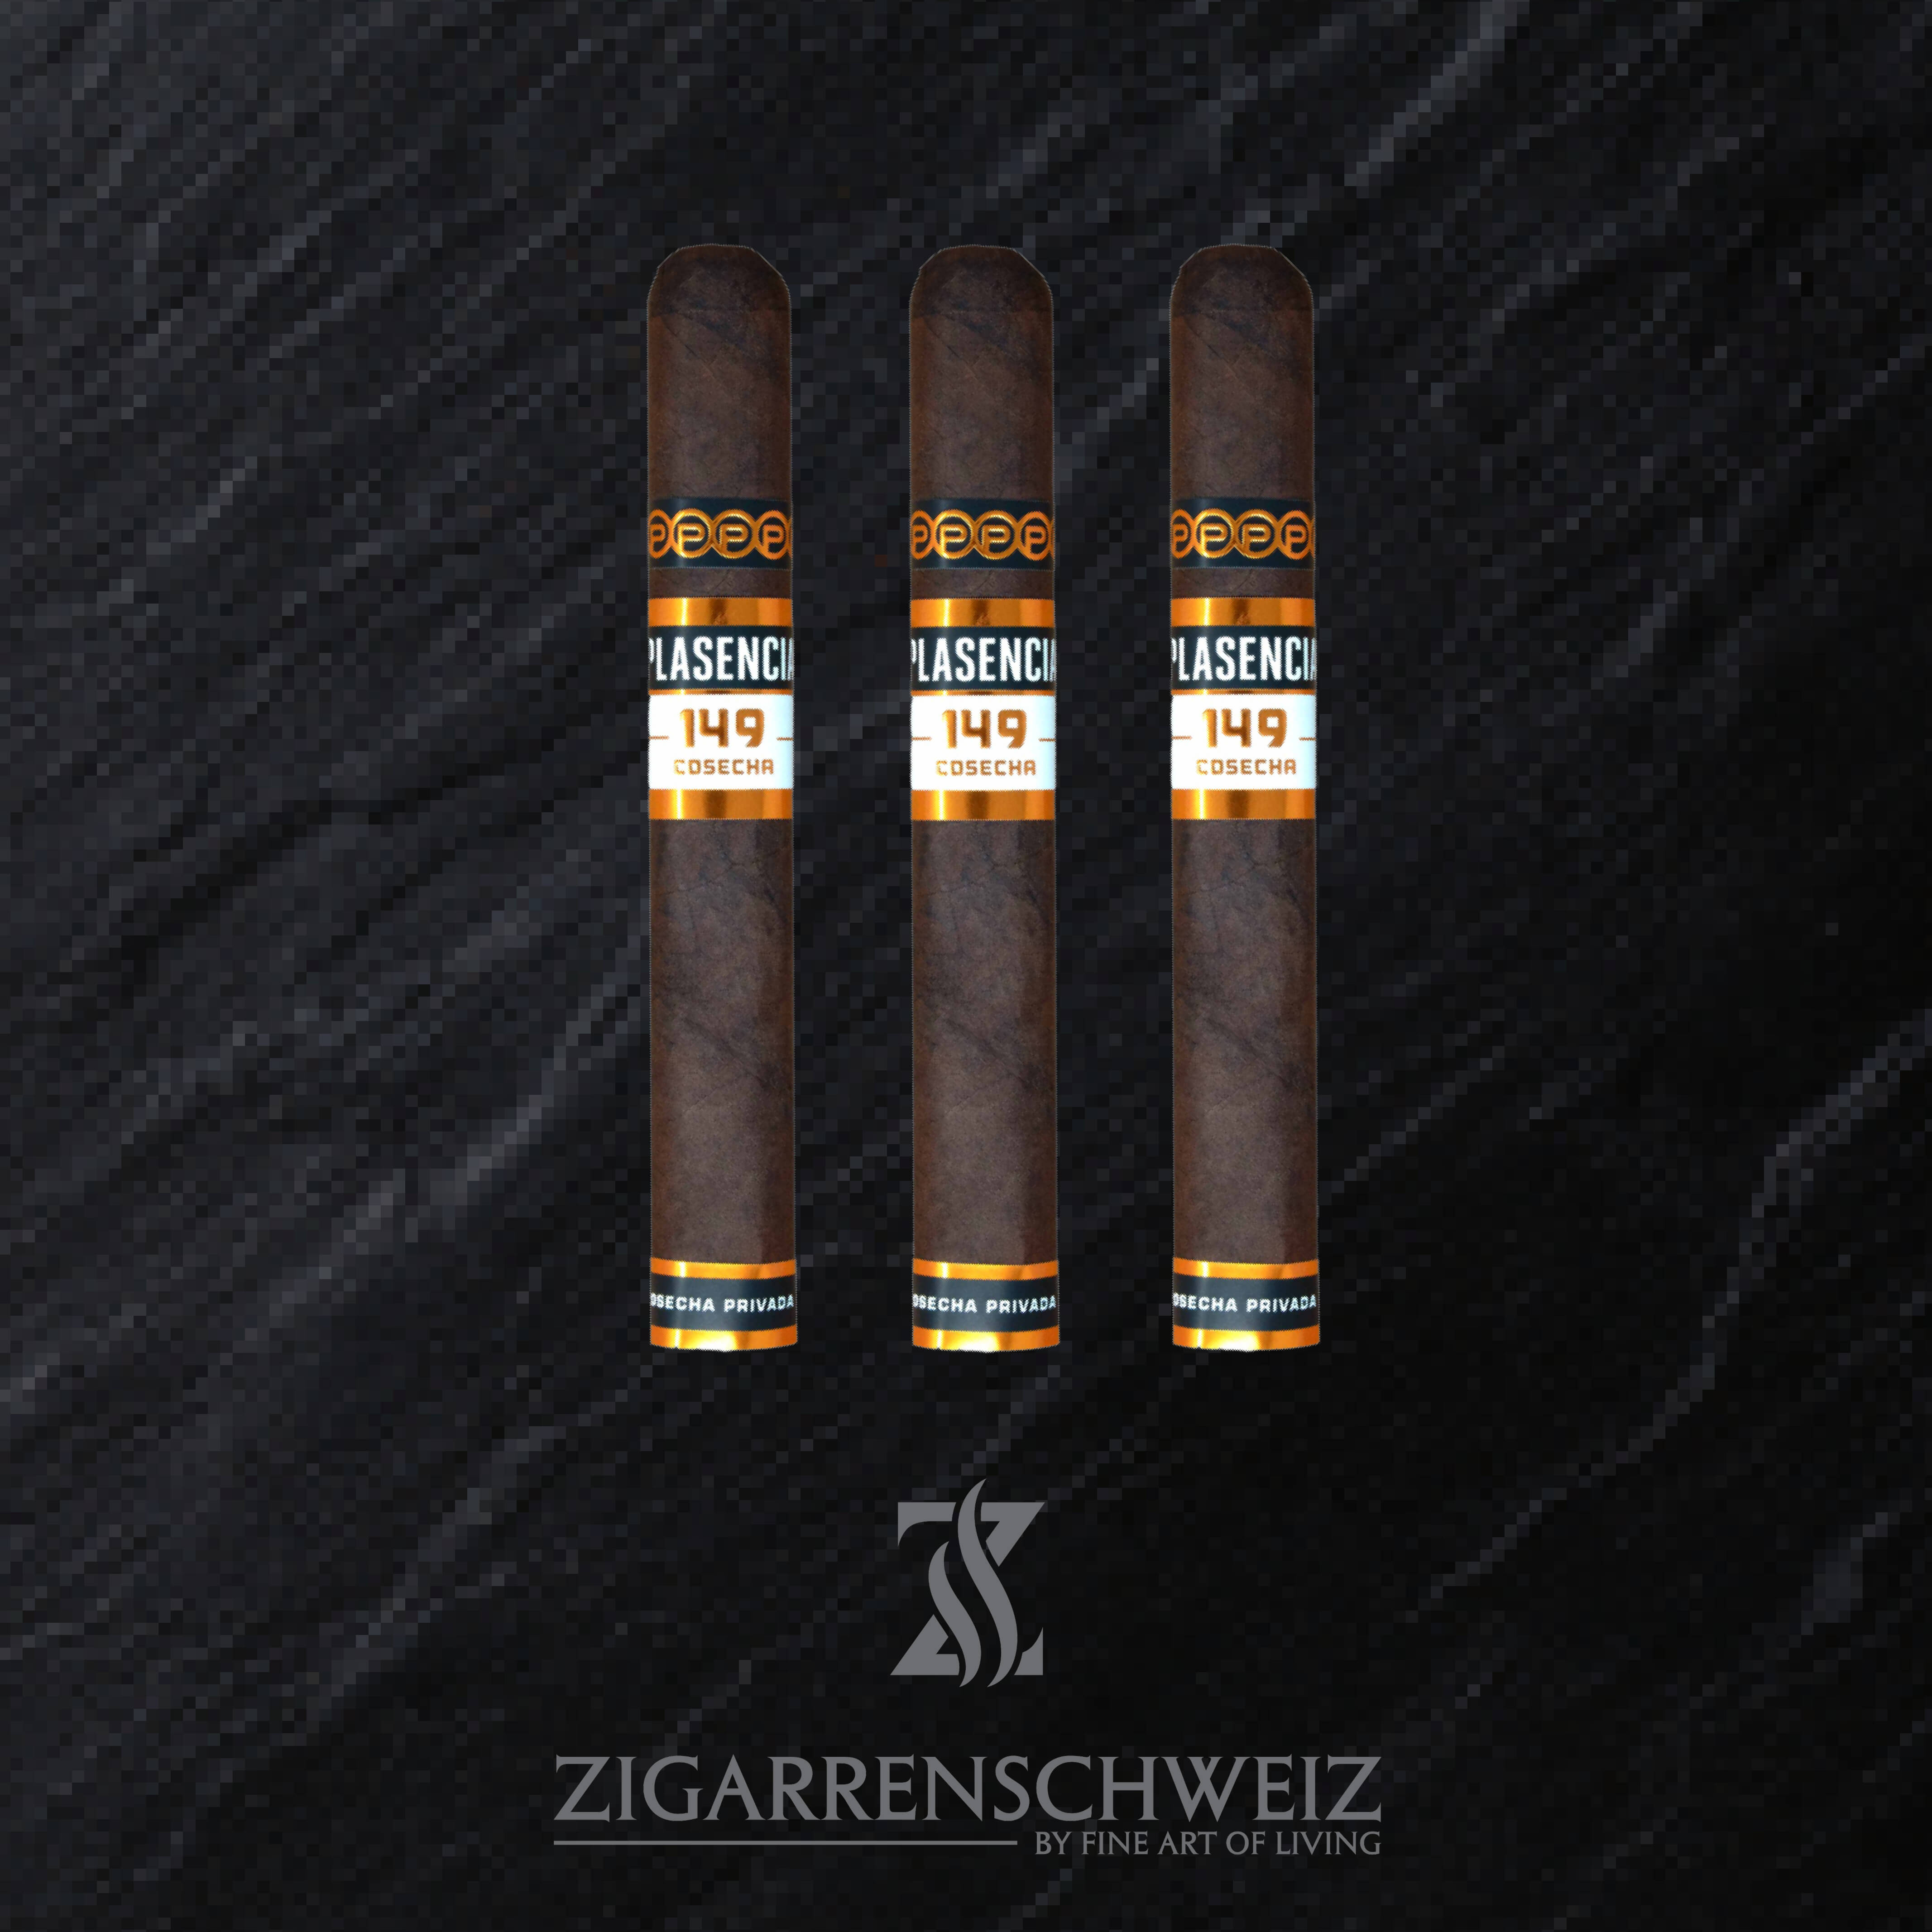 3er Etui Plasencia Cosecha 149 Azacualpa Zigarren im Toro Format